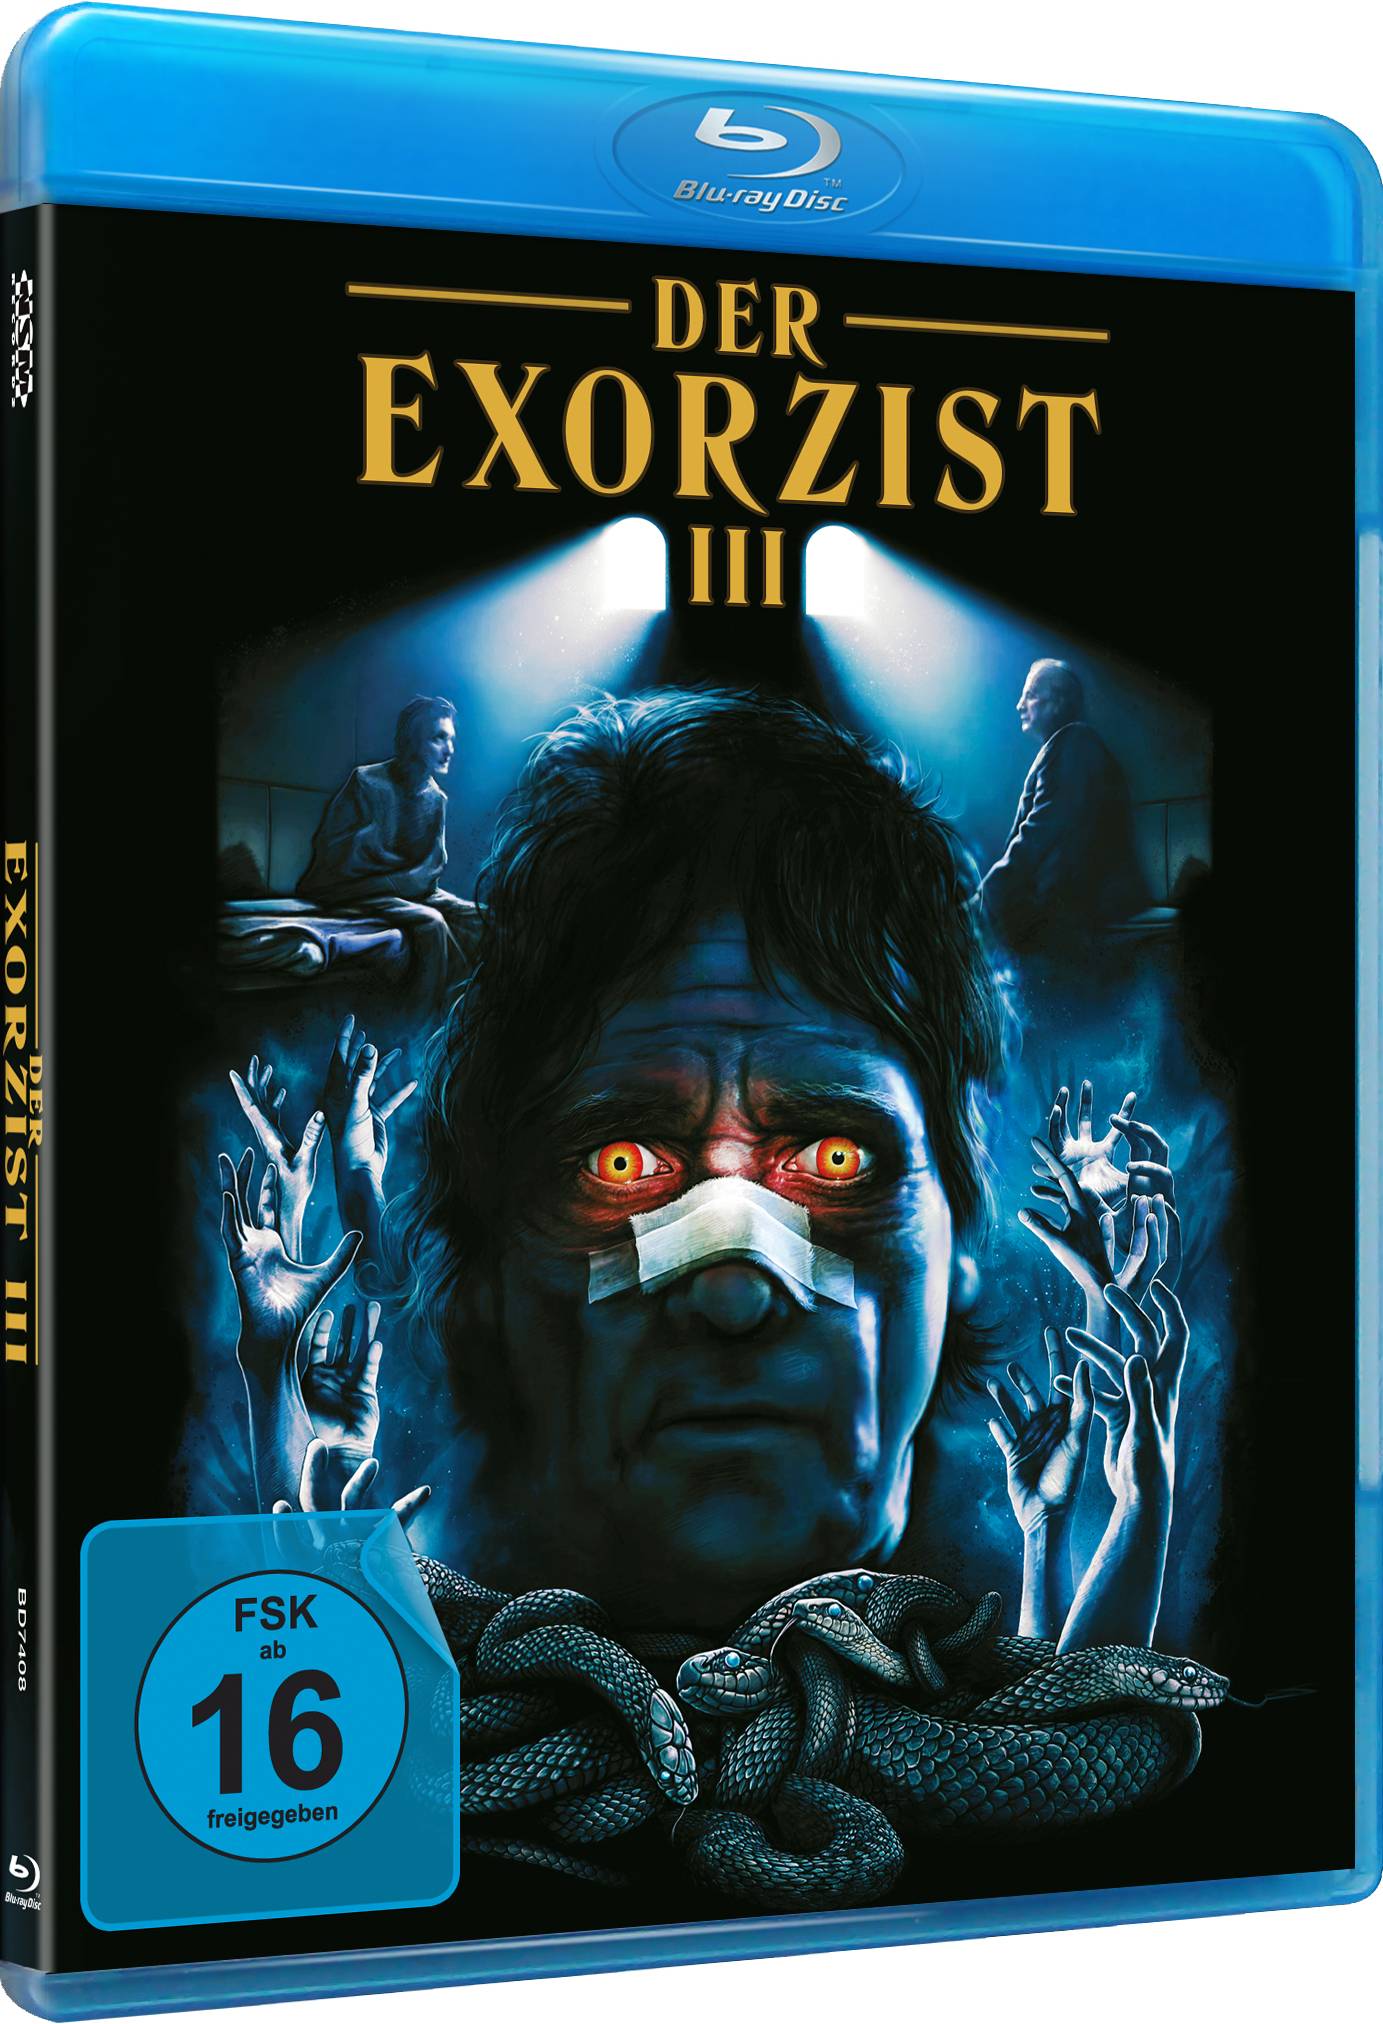 Der Exorzist 3 (Special Edition)